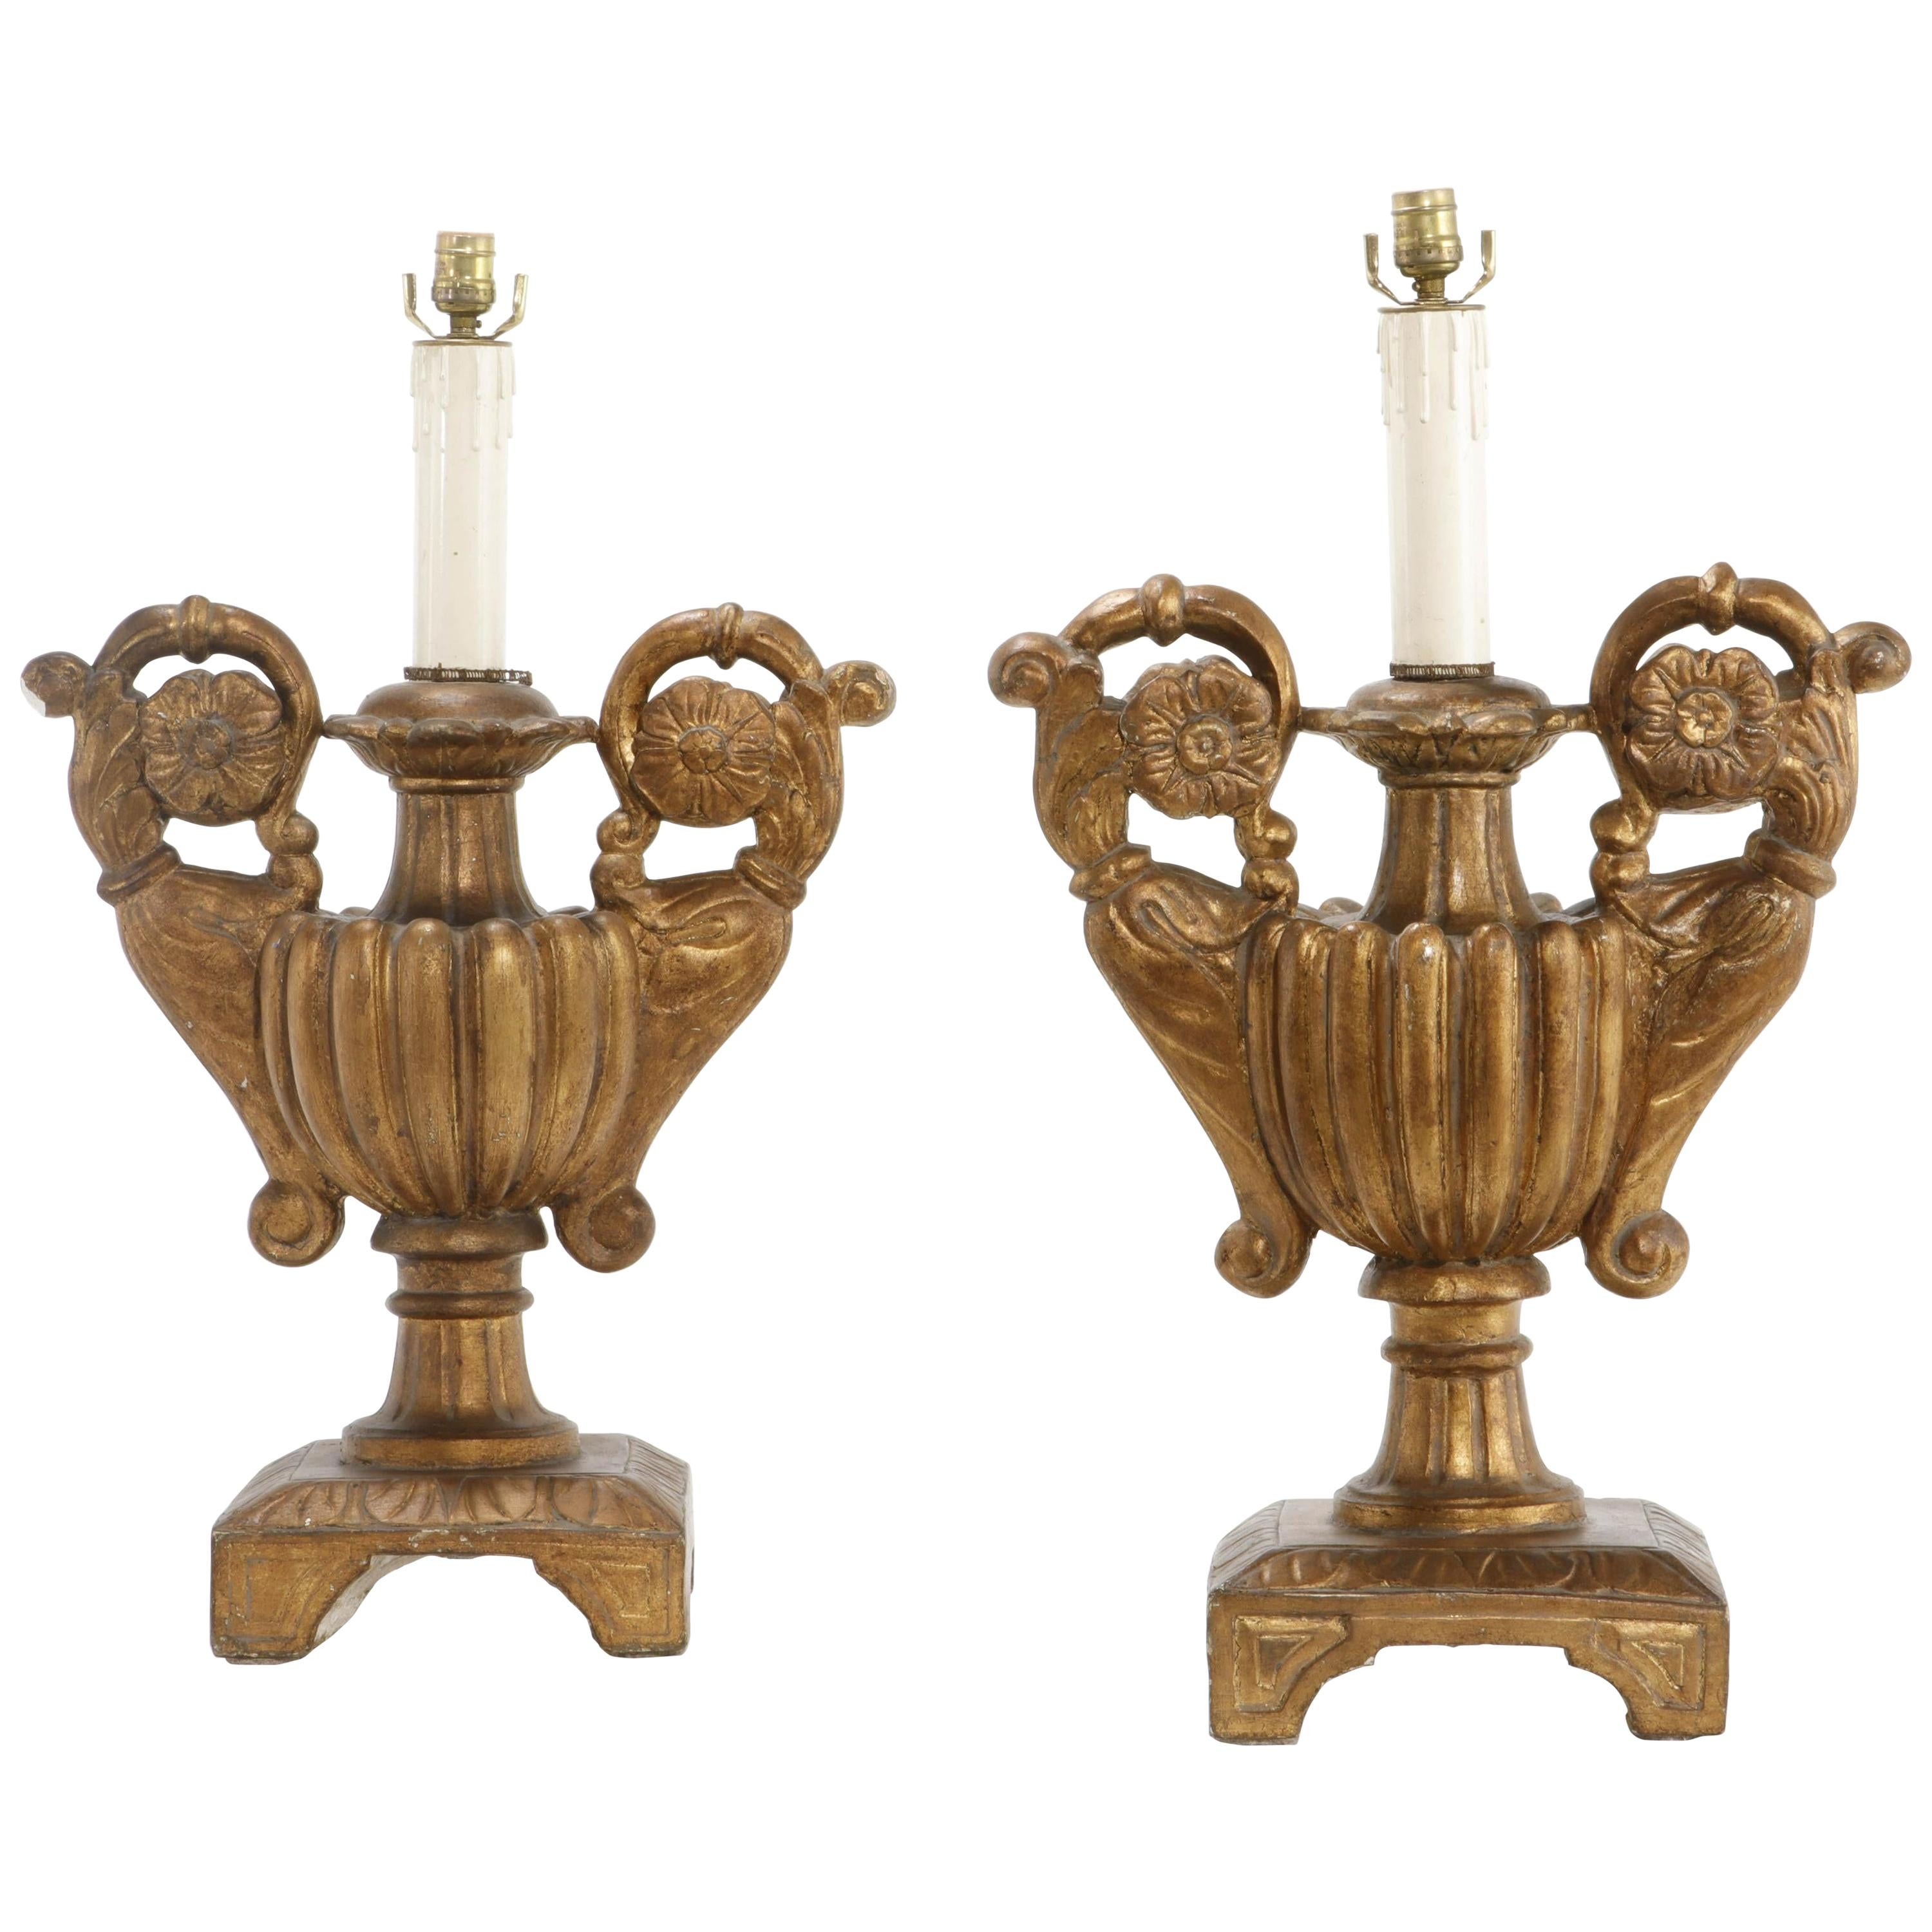 Paire de lampes en forme d'urne en bois doré sculpté de style baroque italien